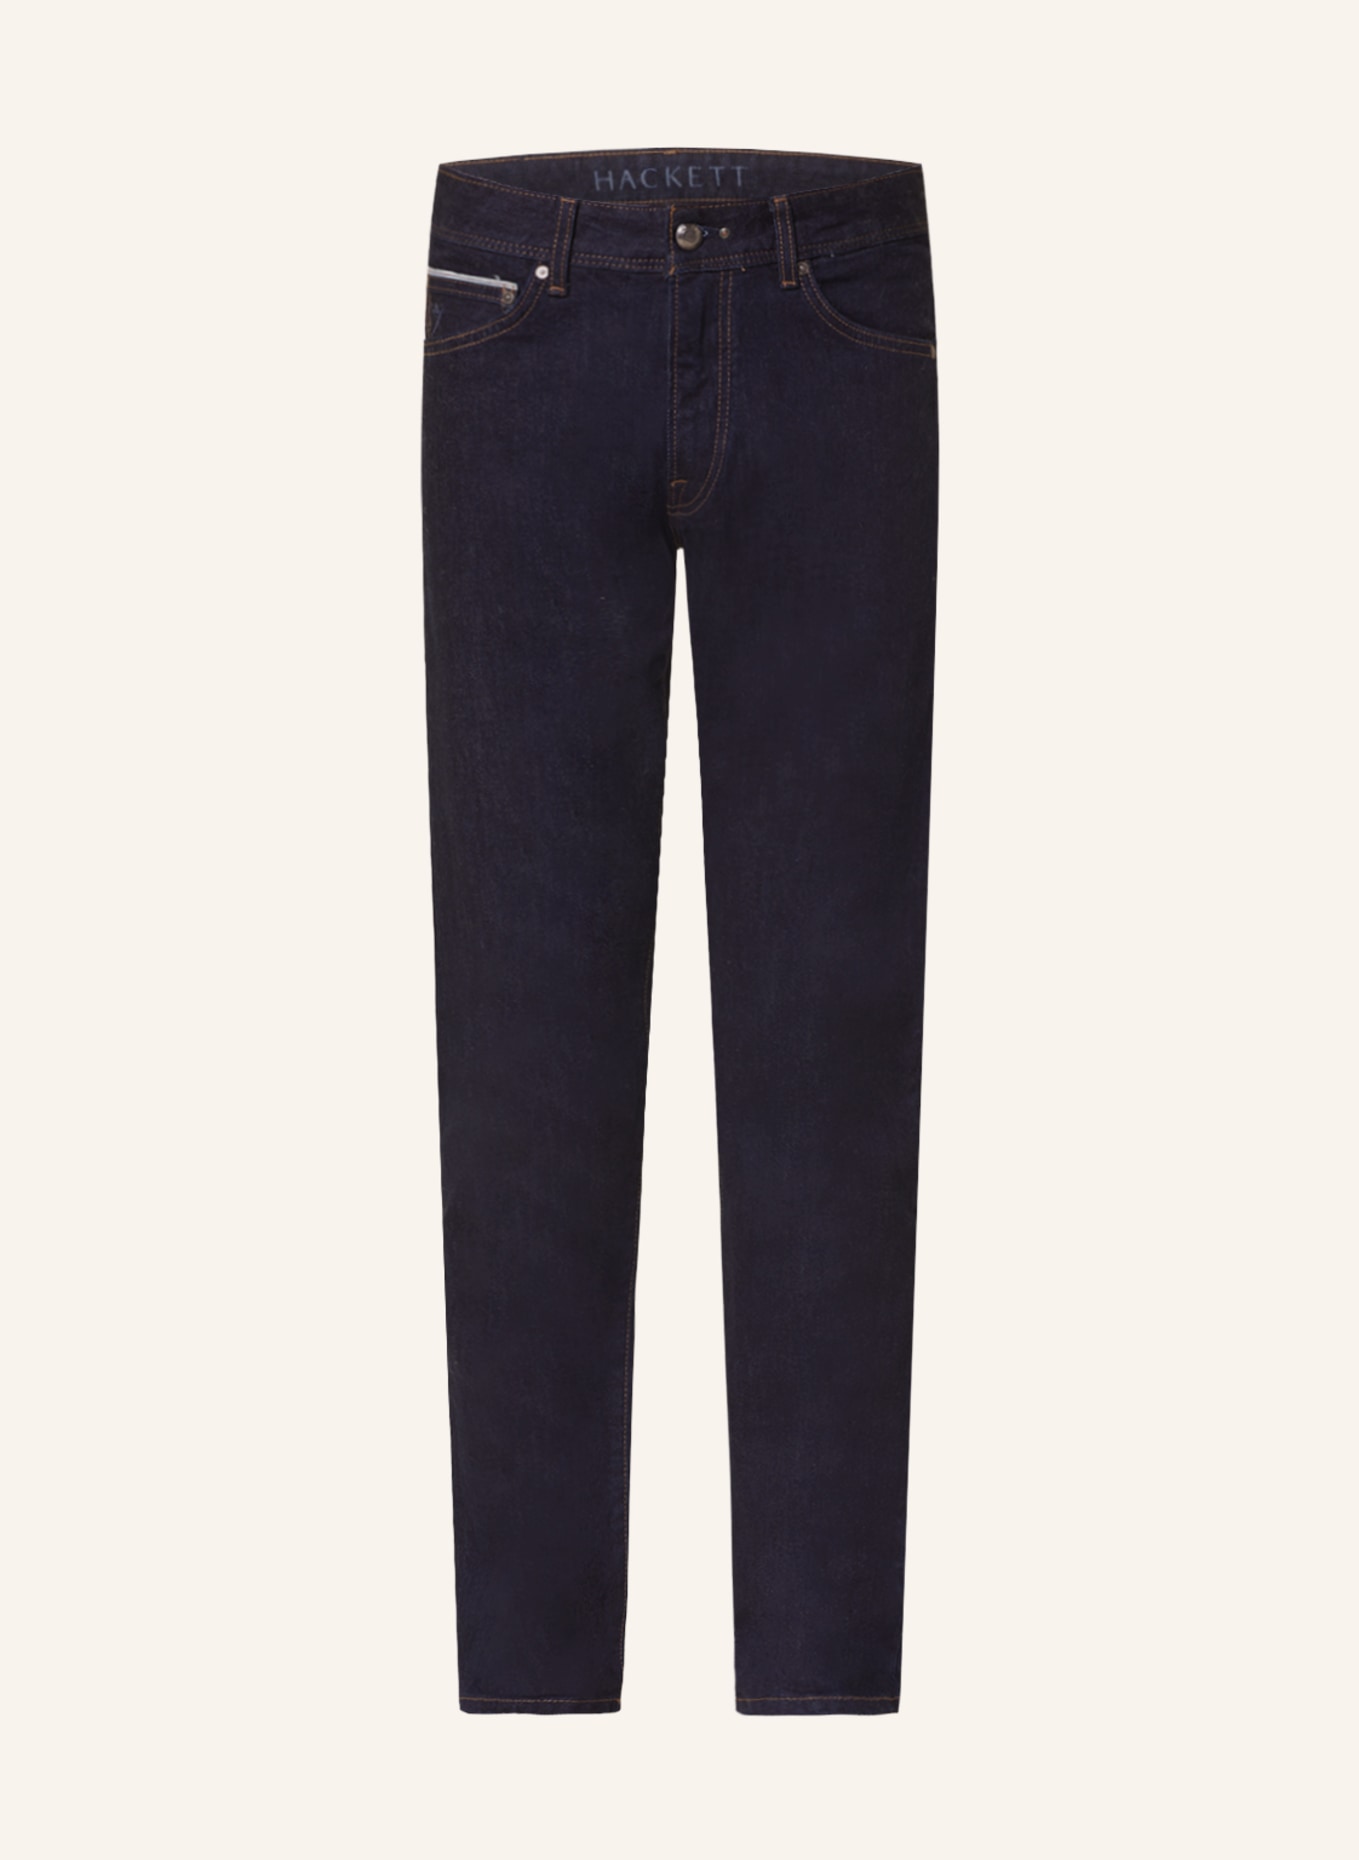 HACKETT LONDON Jeans Slim Fit, Farbe: 5IT DENIM B / L0'' (Bild 1)